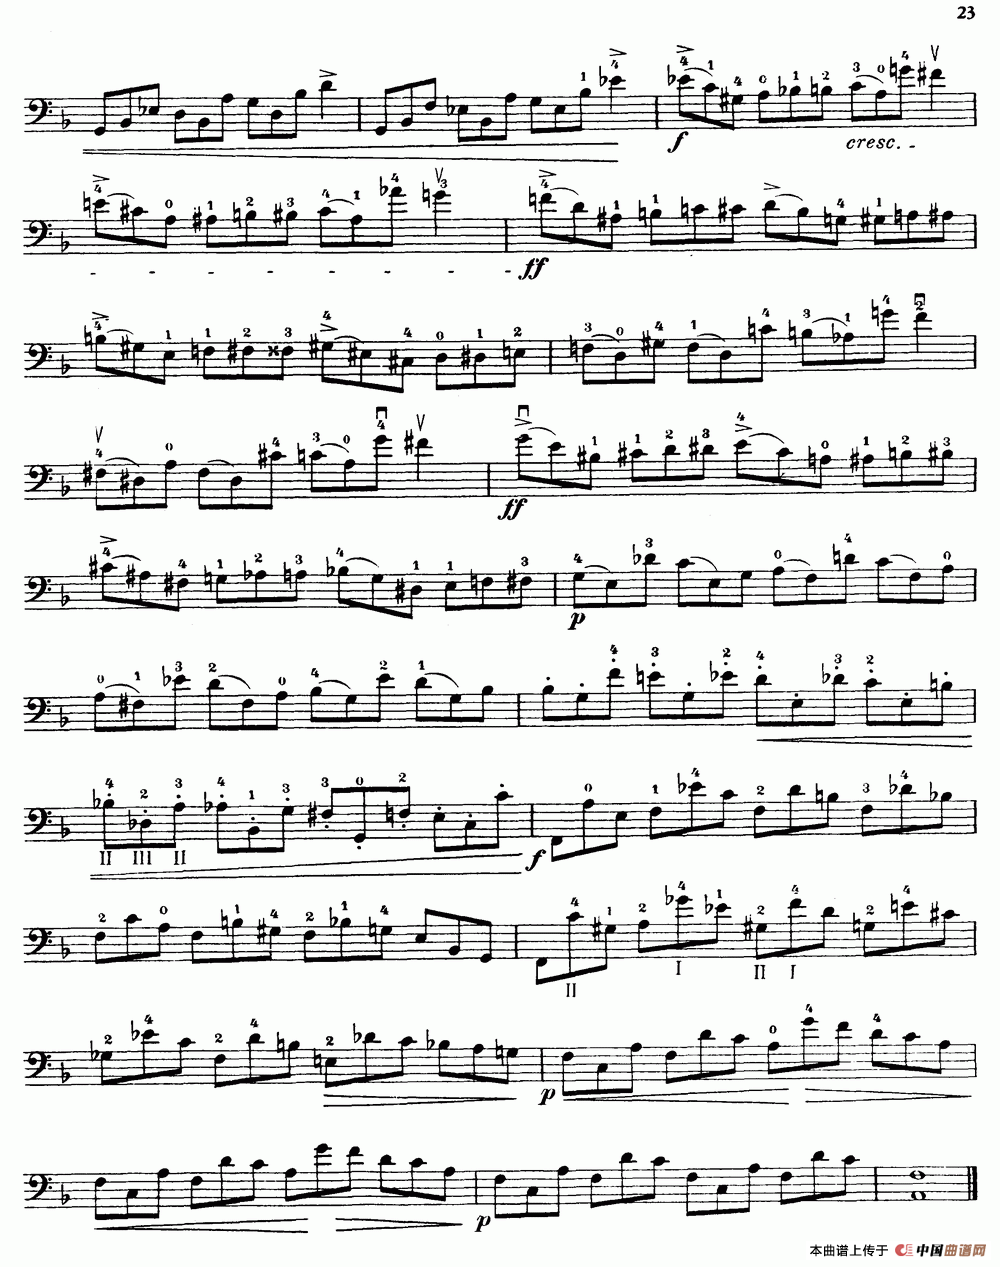 大提琴高级练习曲40首 No.11小提琴谱